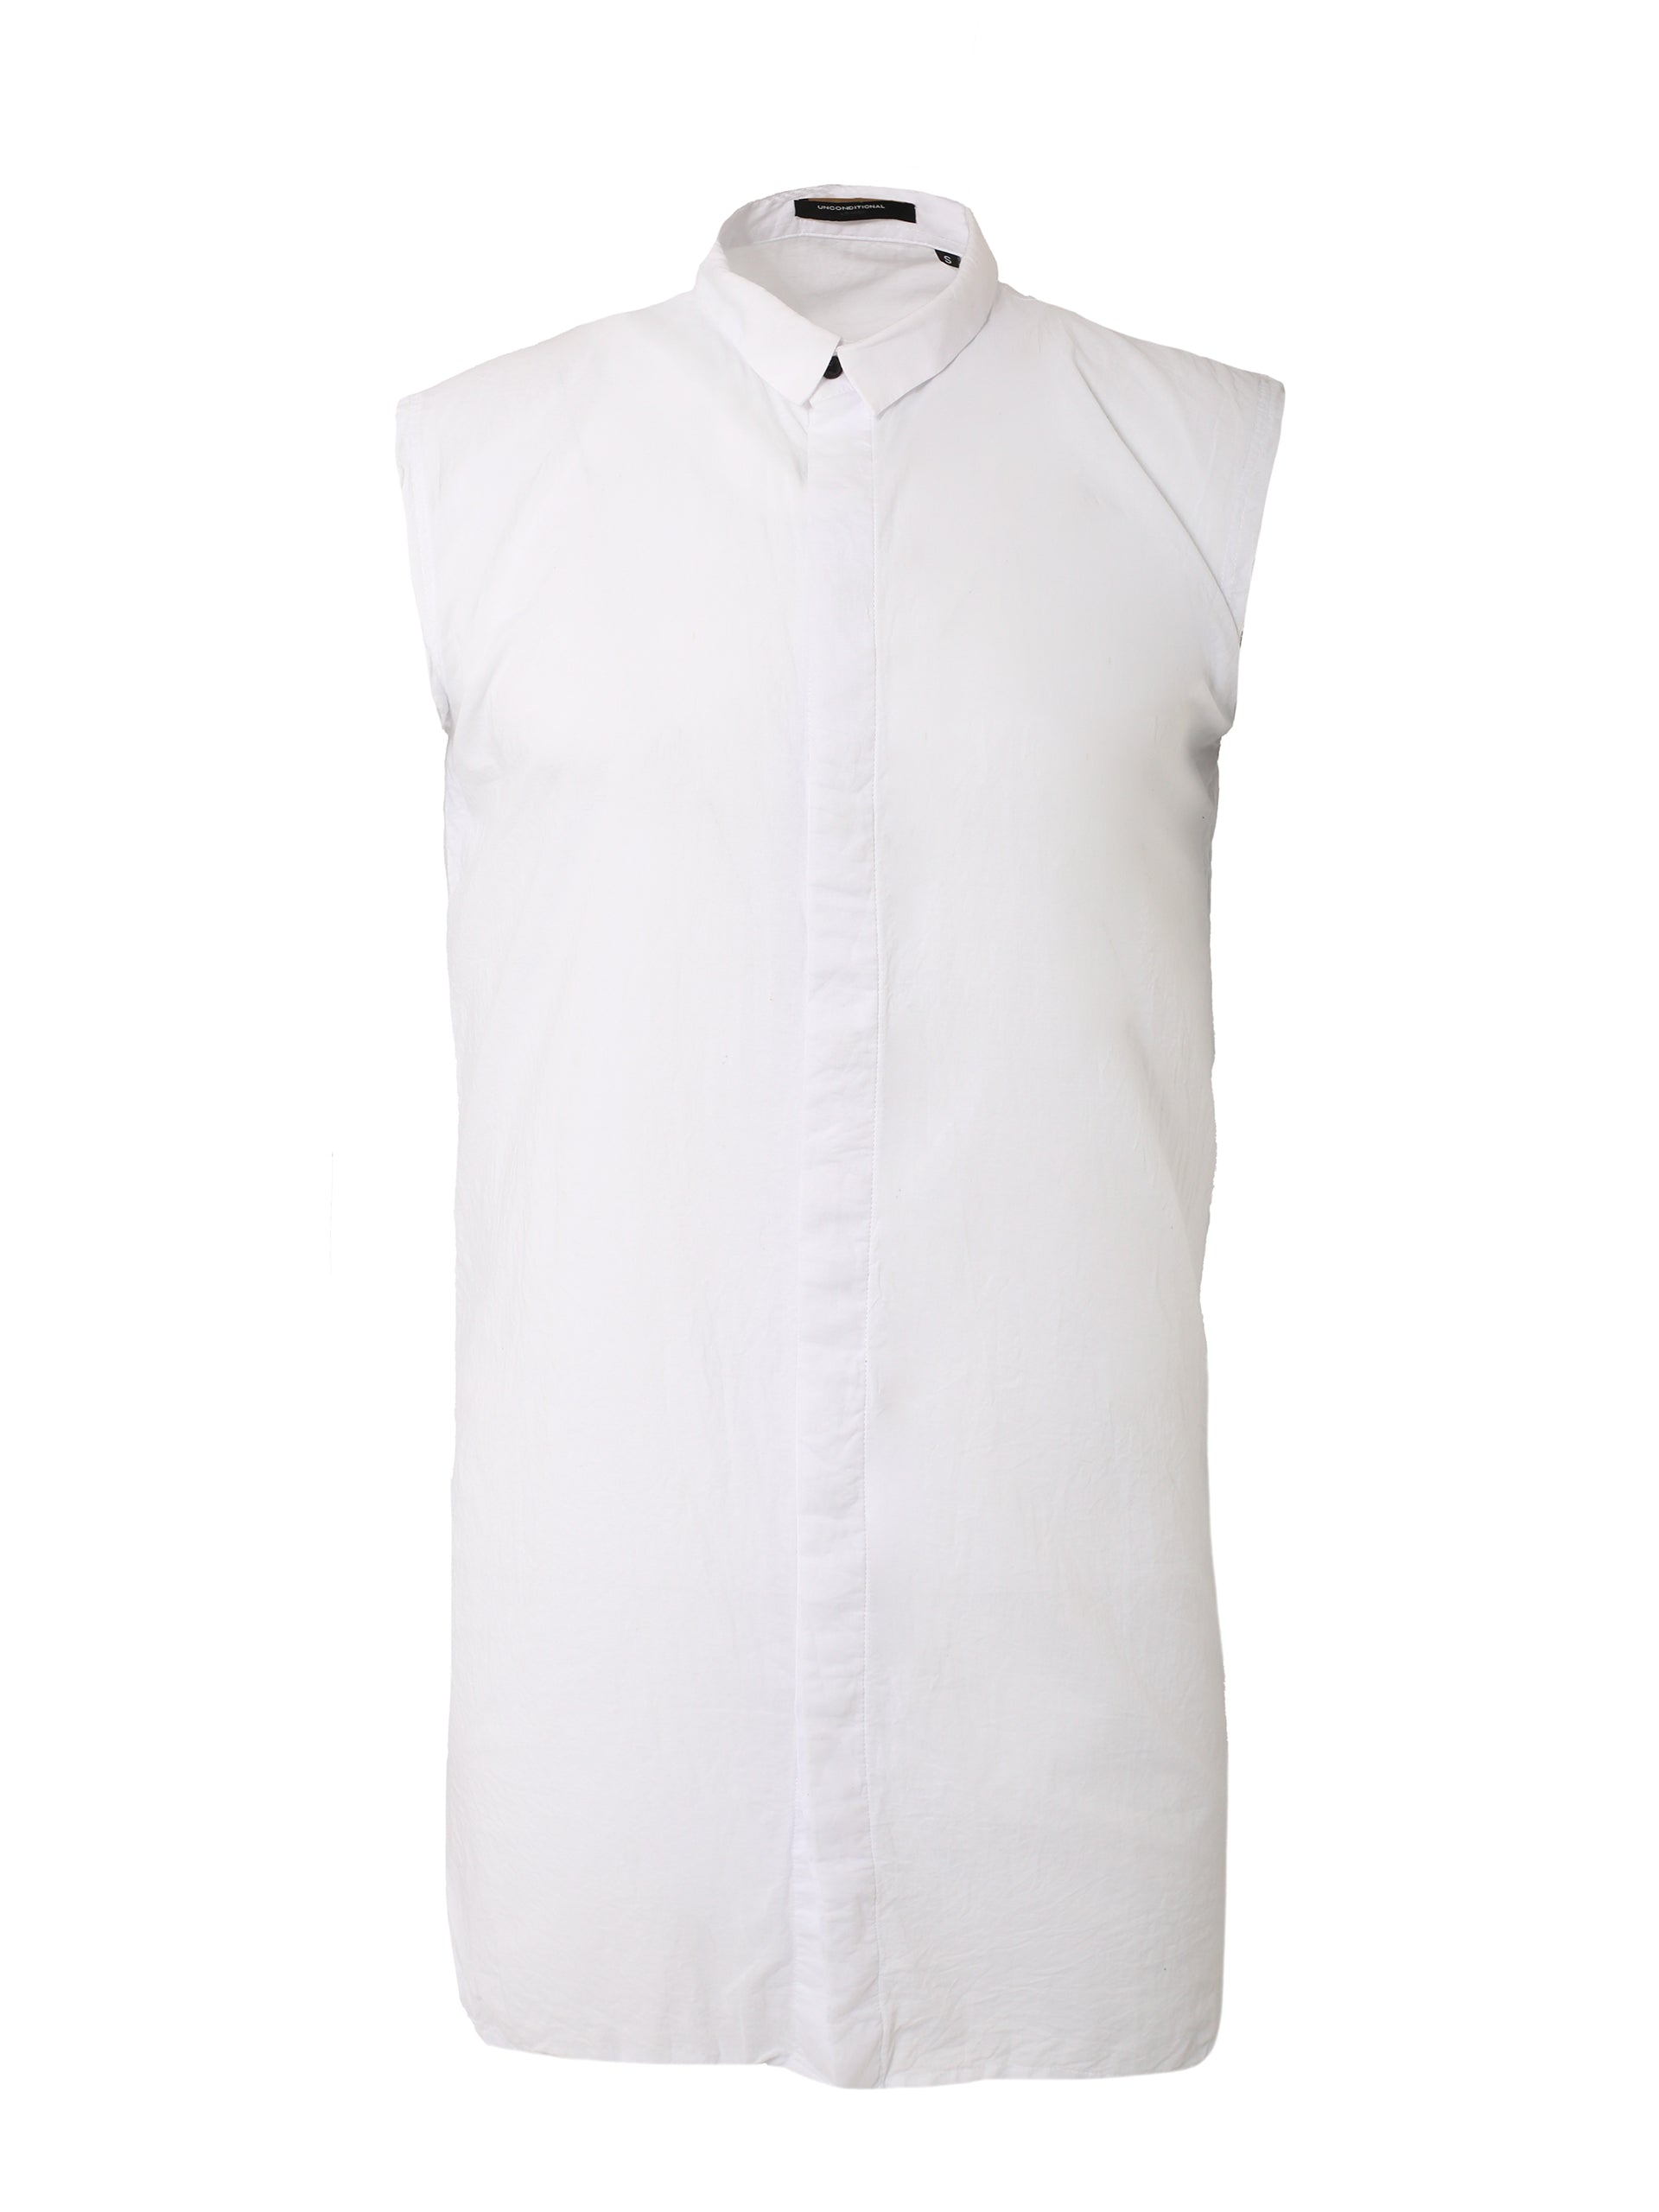 Sleeveless White Shirt